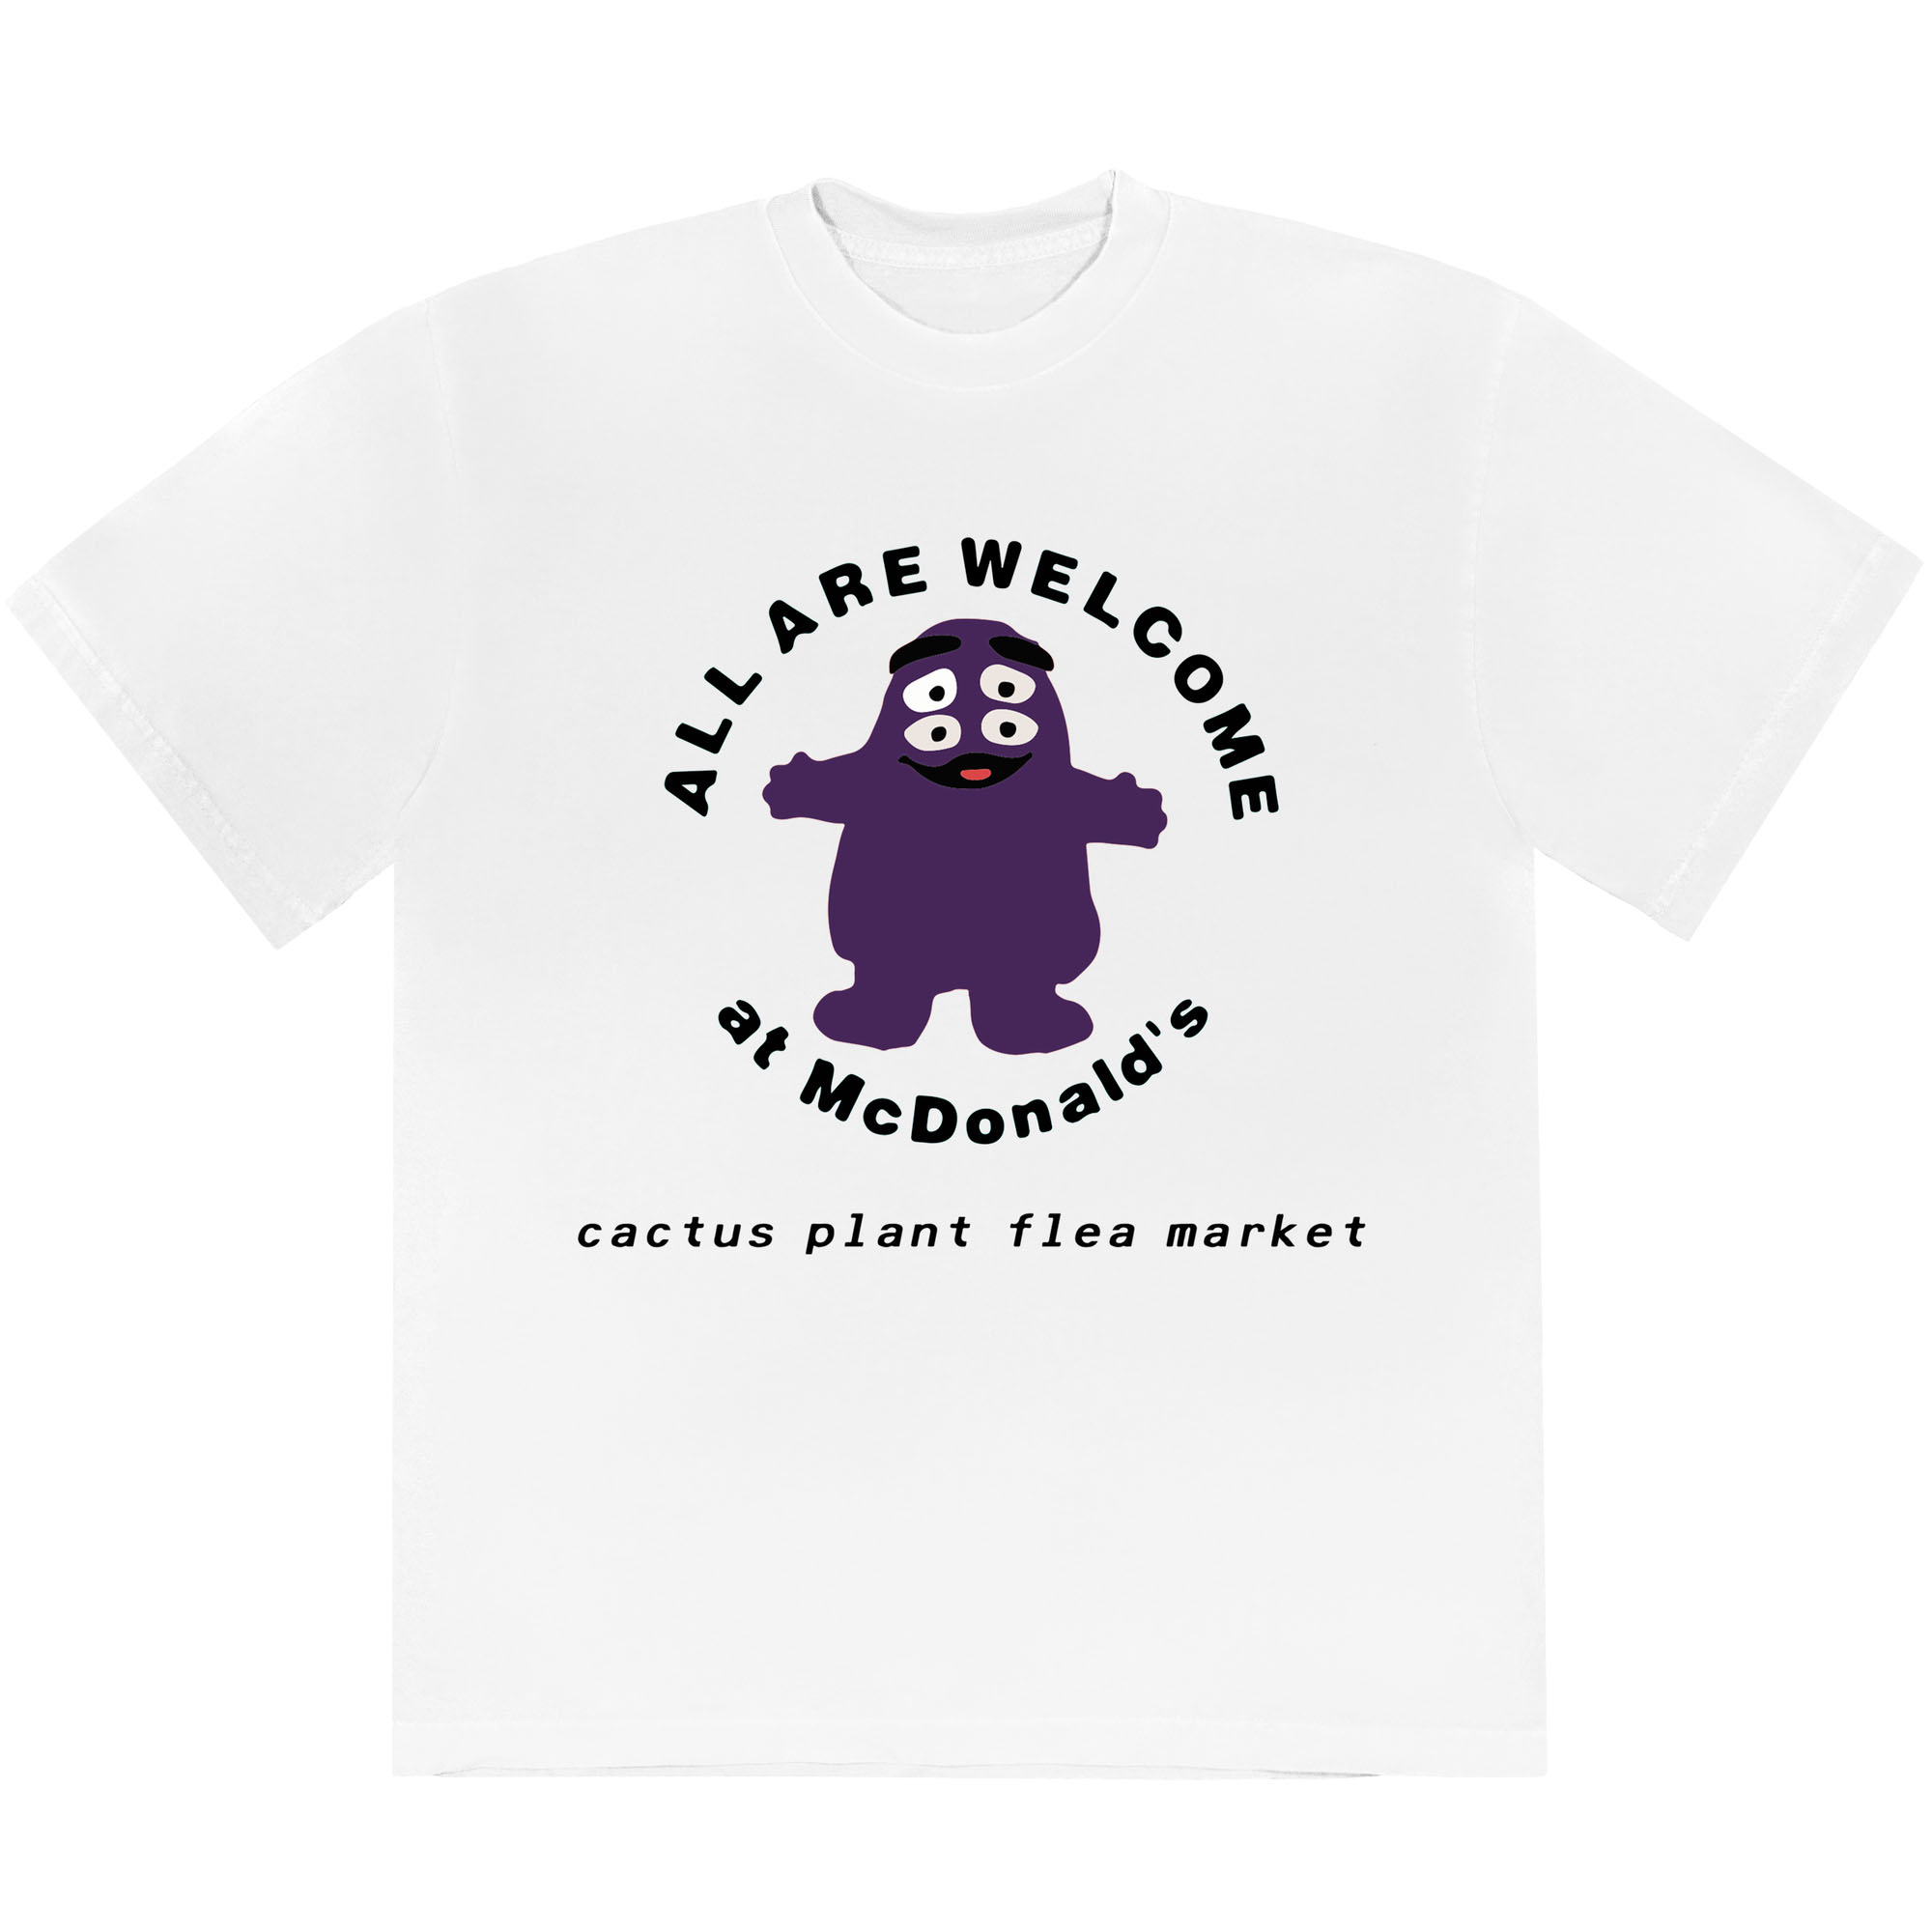 Cactus Plant Flea Market x McDonald's Grimace T-shirt White メンズ ...